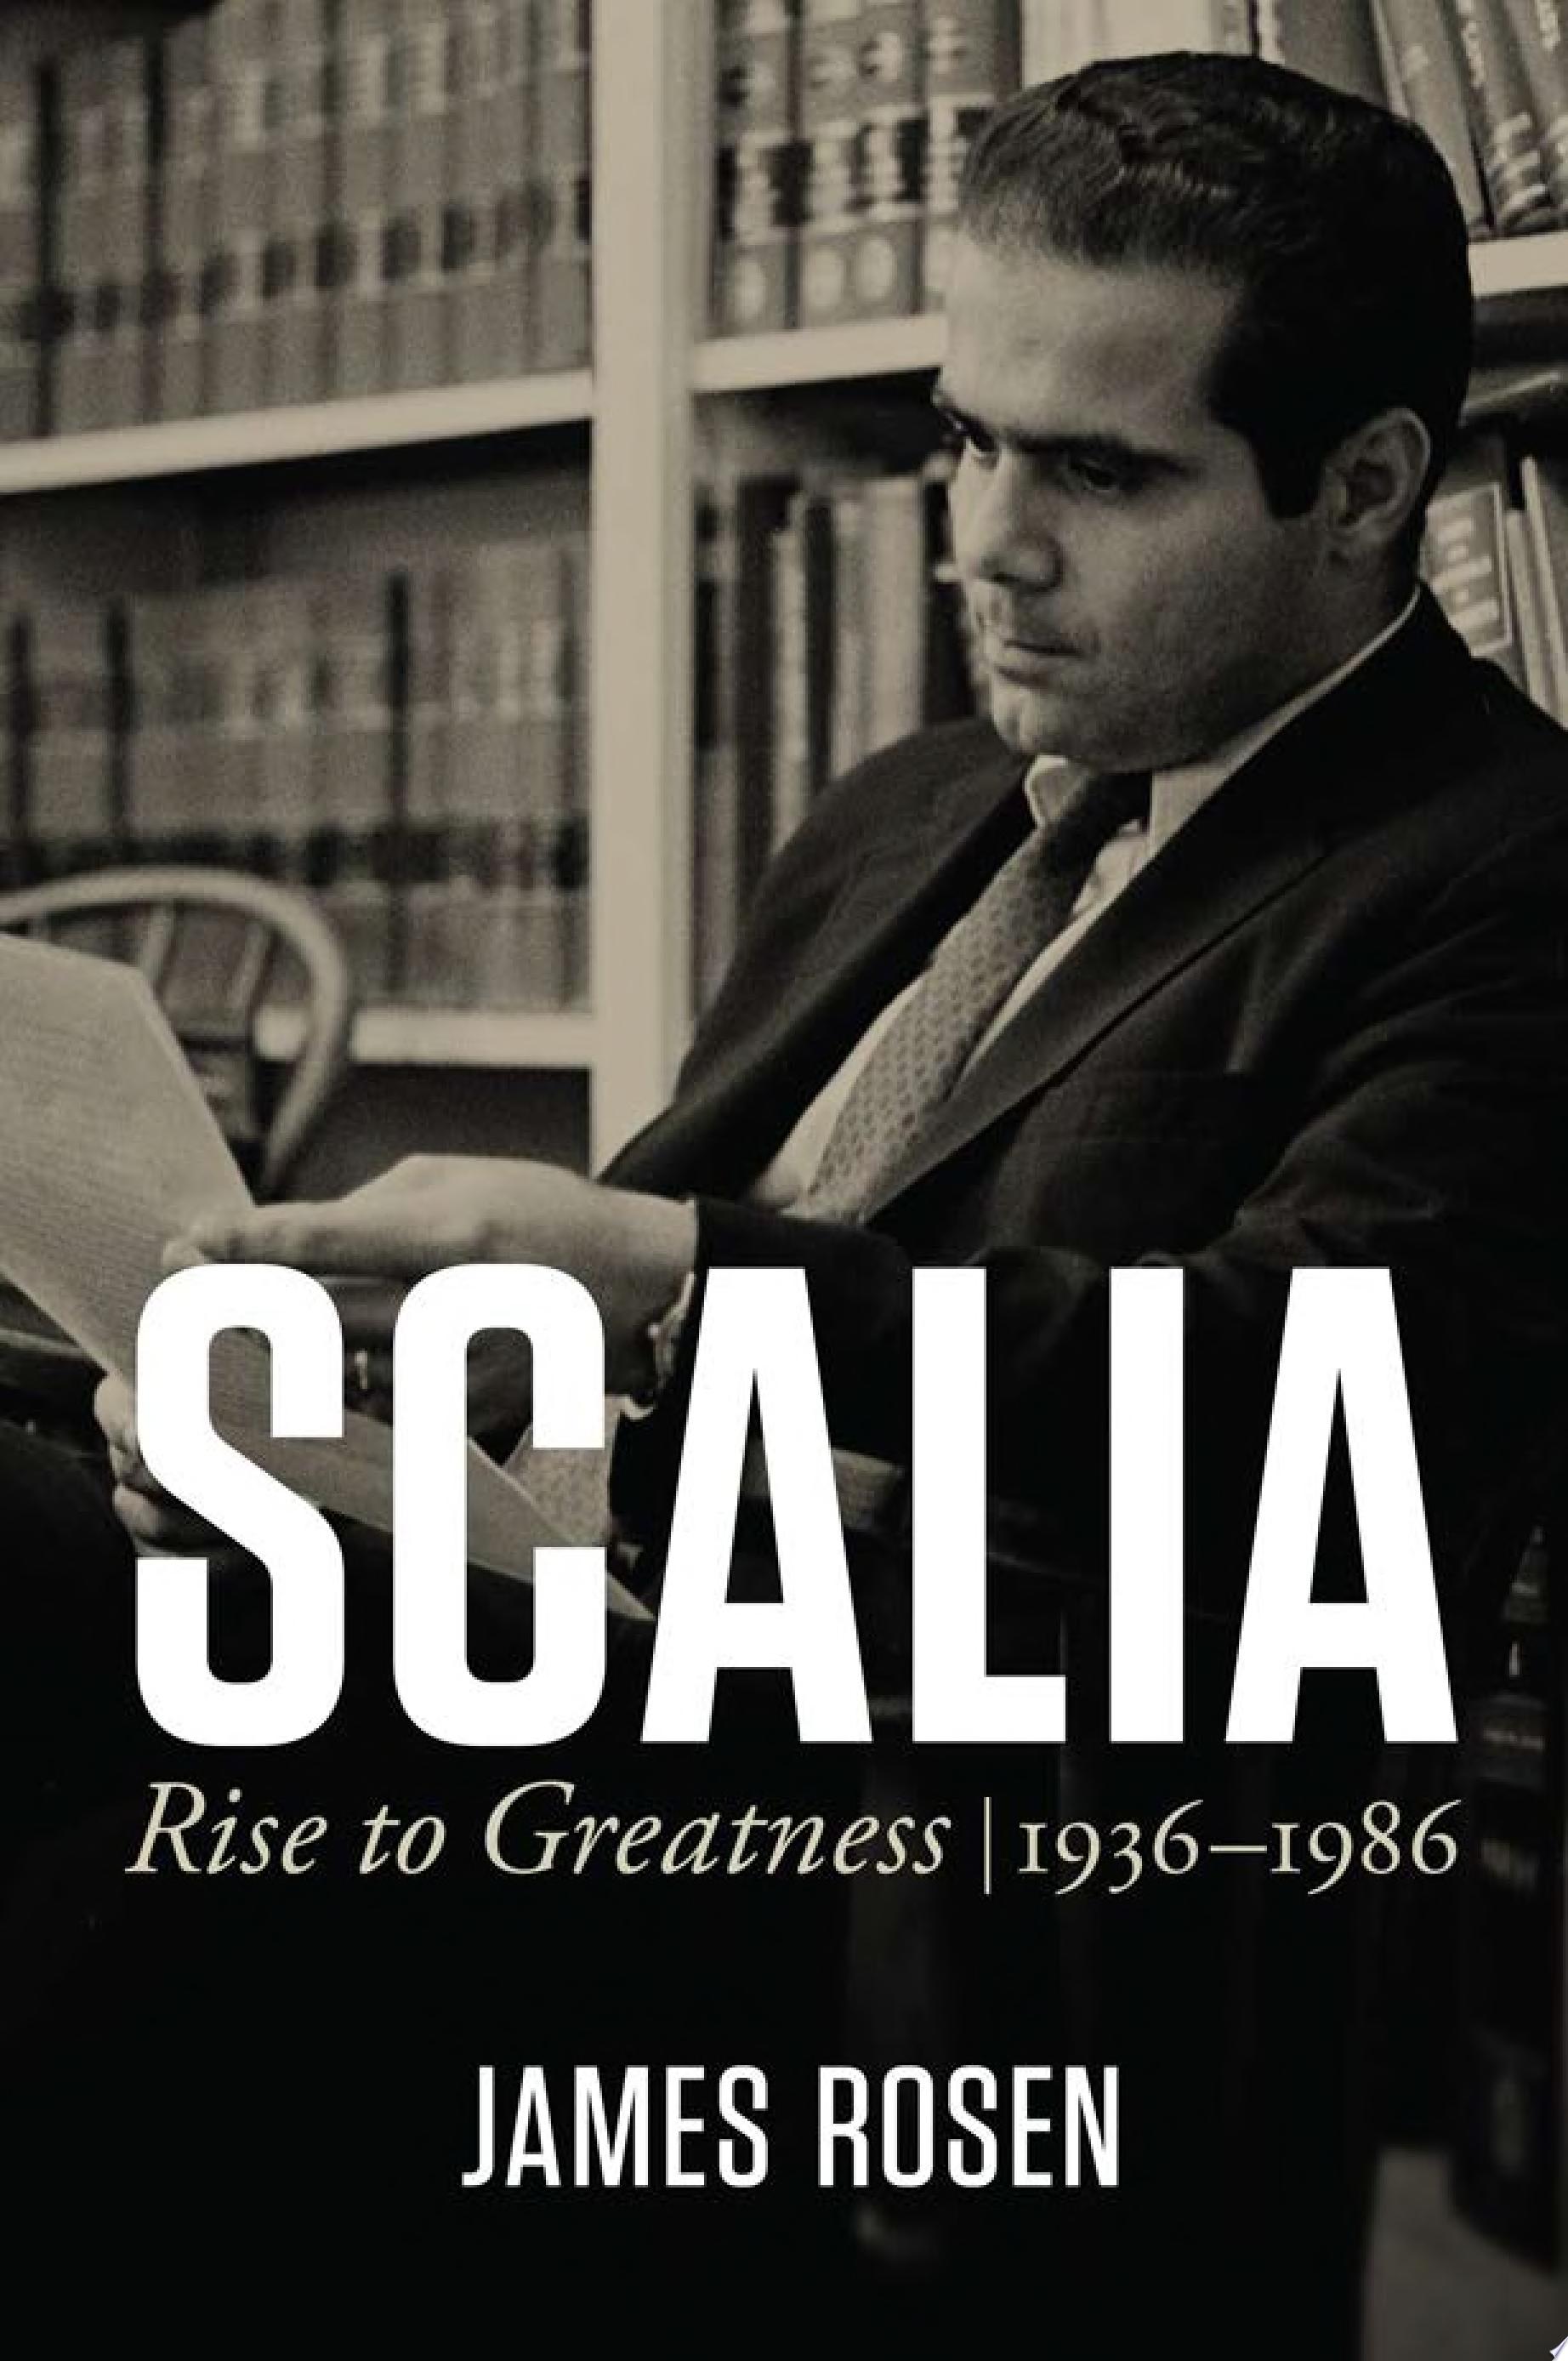 Image for "Scalia"